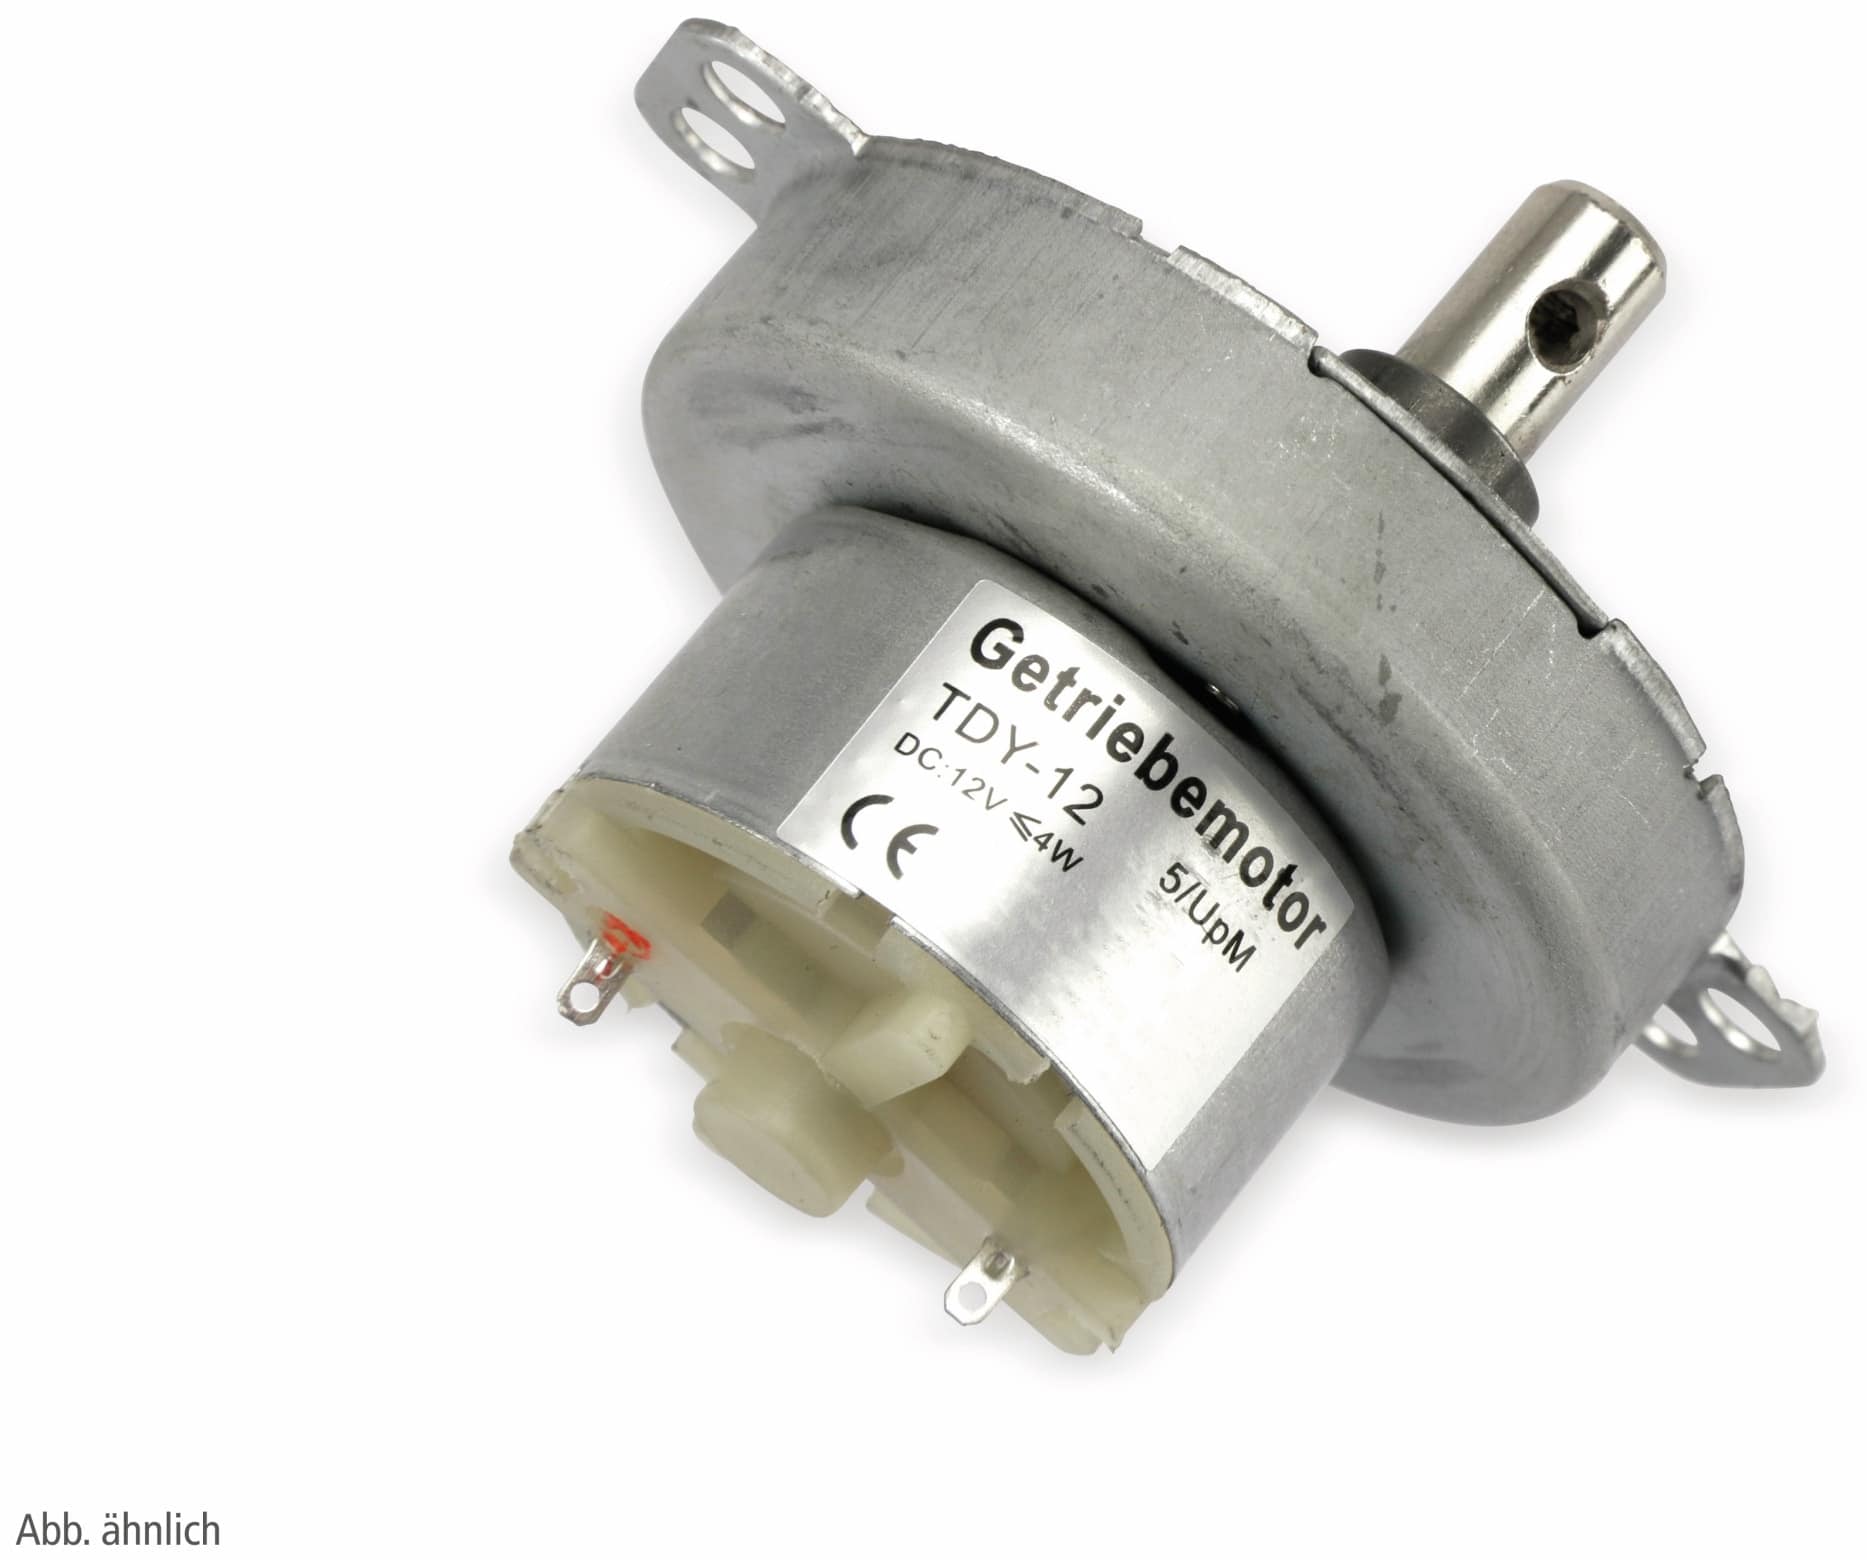 Gleichstrom-Getriebemotor TDY-12, 12 V-, 0,18 A, 15 U/min